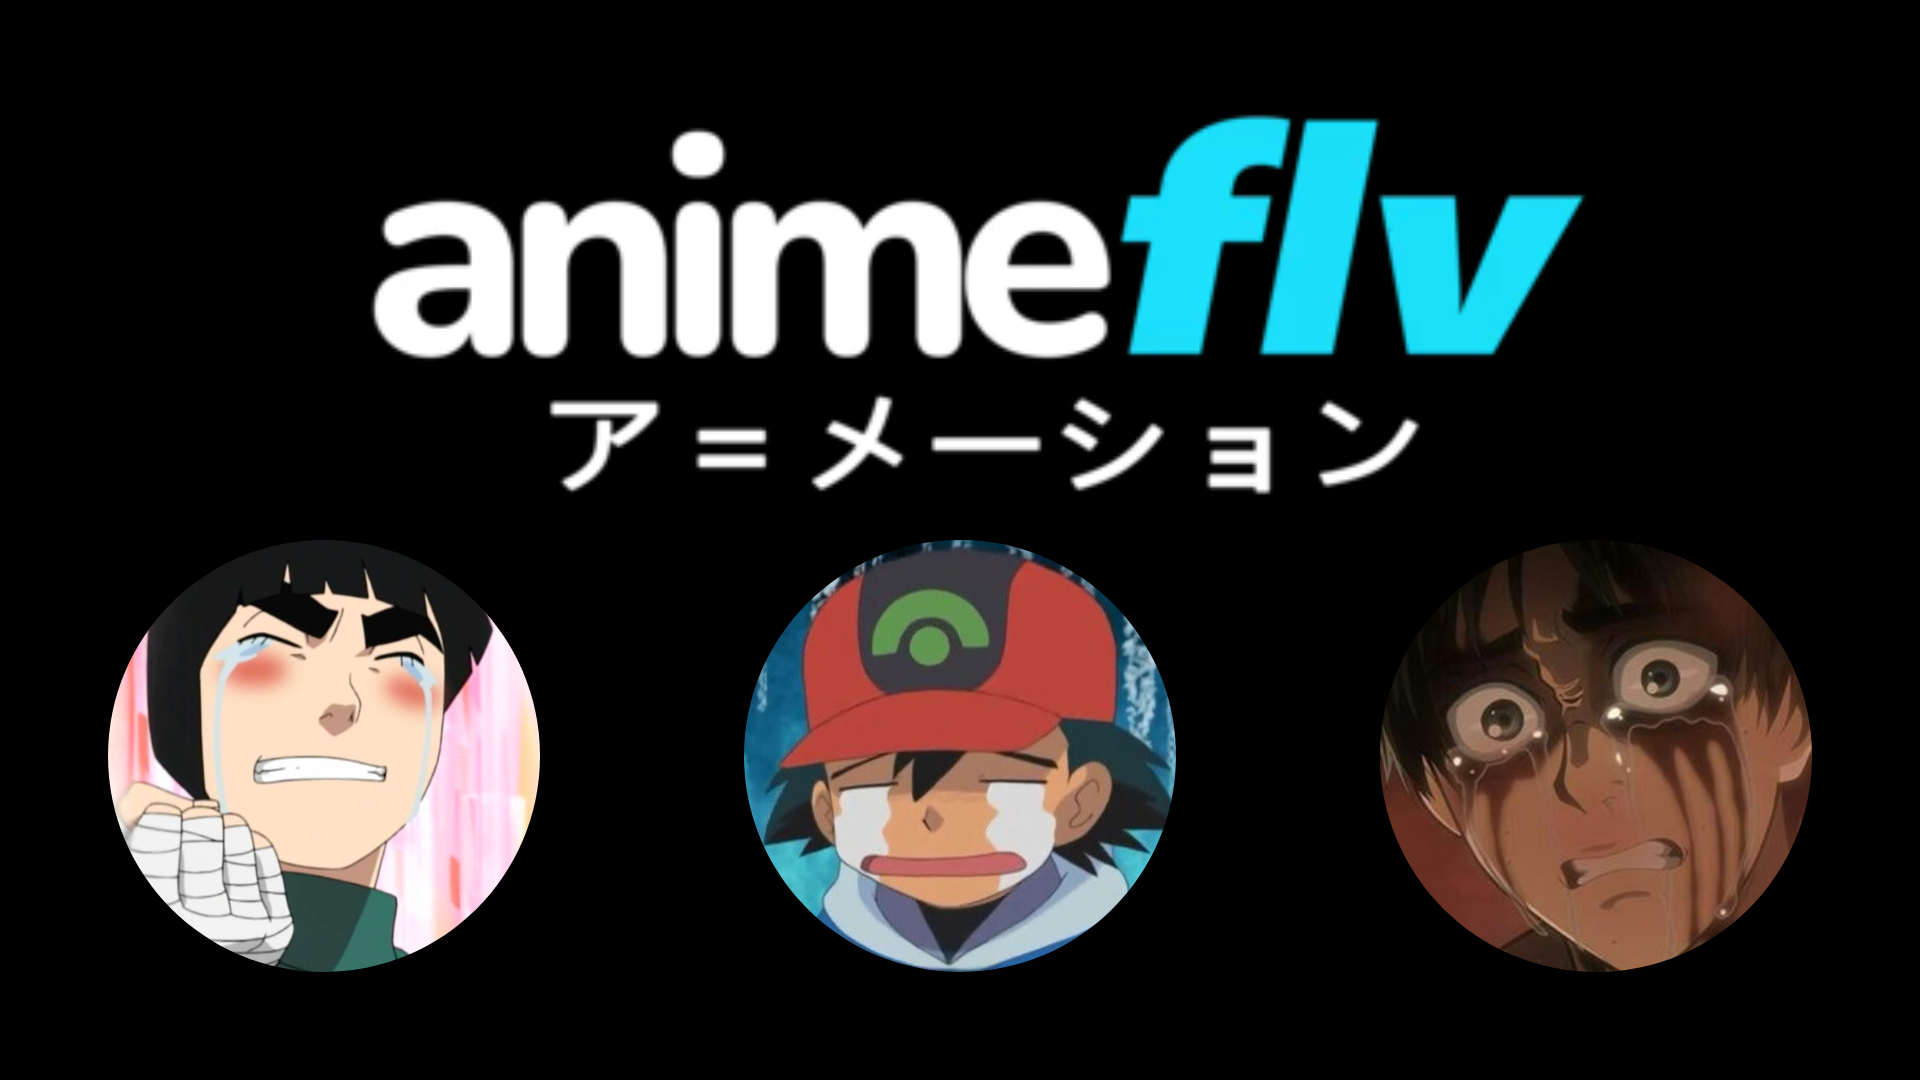 Reveal 144+ anime flv